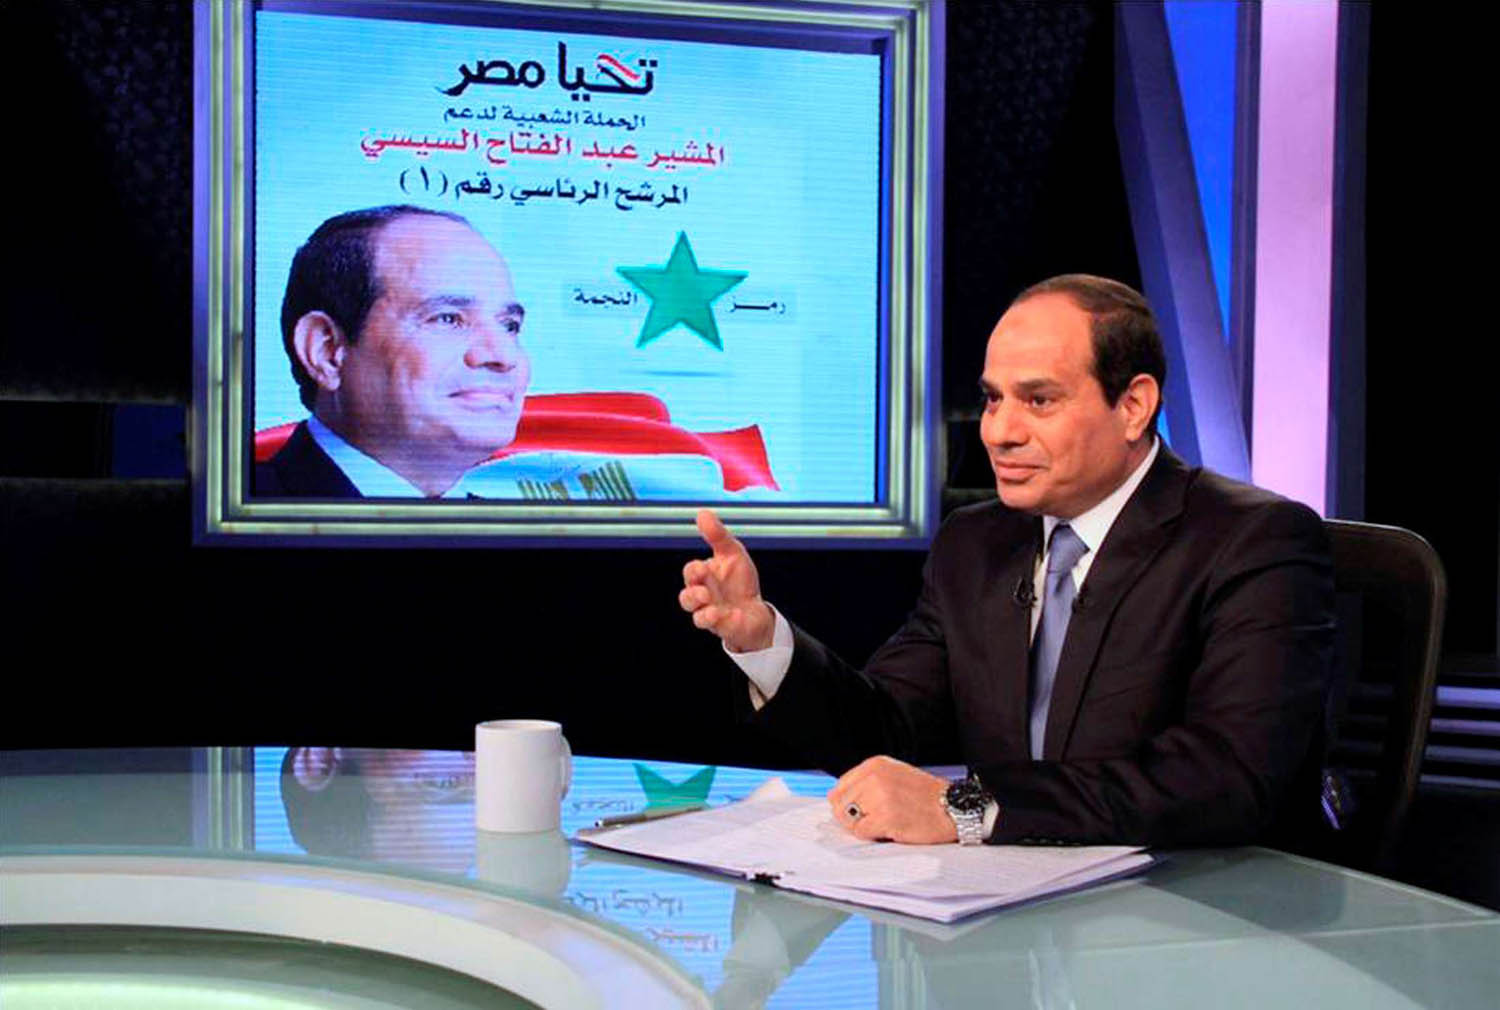 الرئيس المصري عبدالفتاح السيسي في لقاء تلفزيوني